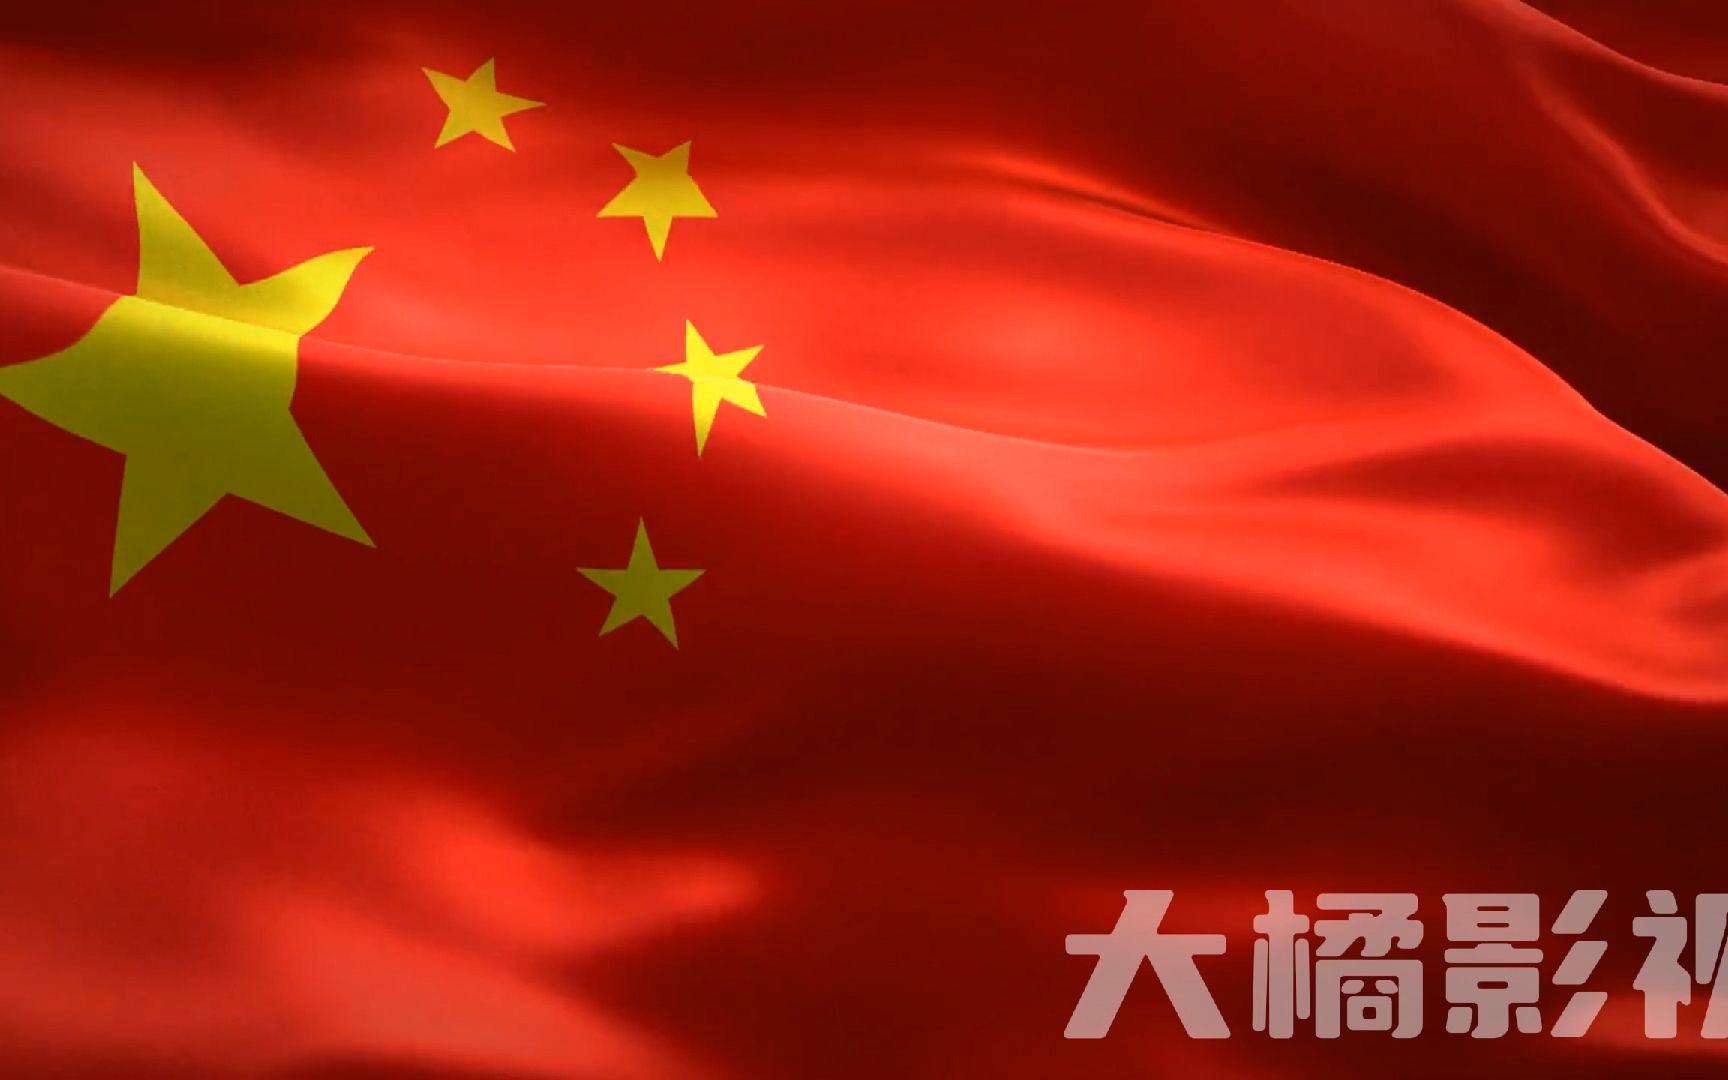 《我爱你中国》伴奏丨朗诵演讲伴奏背景视频丨1080p高清视频素材